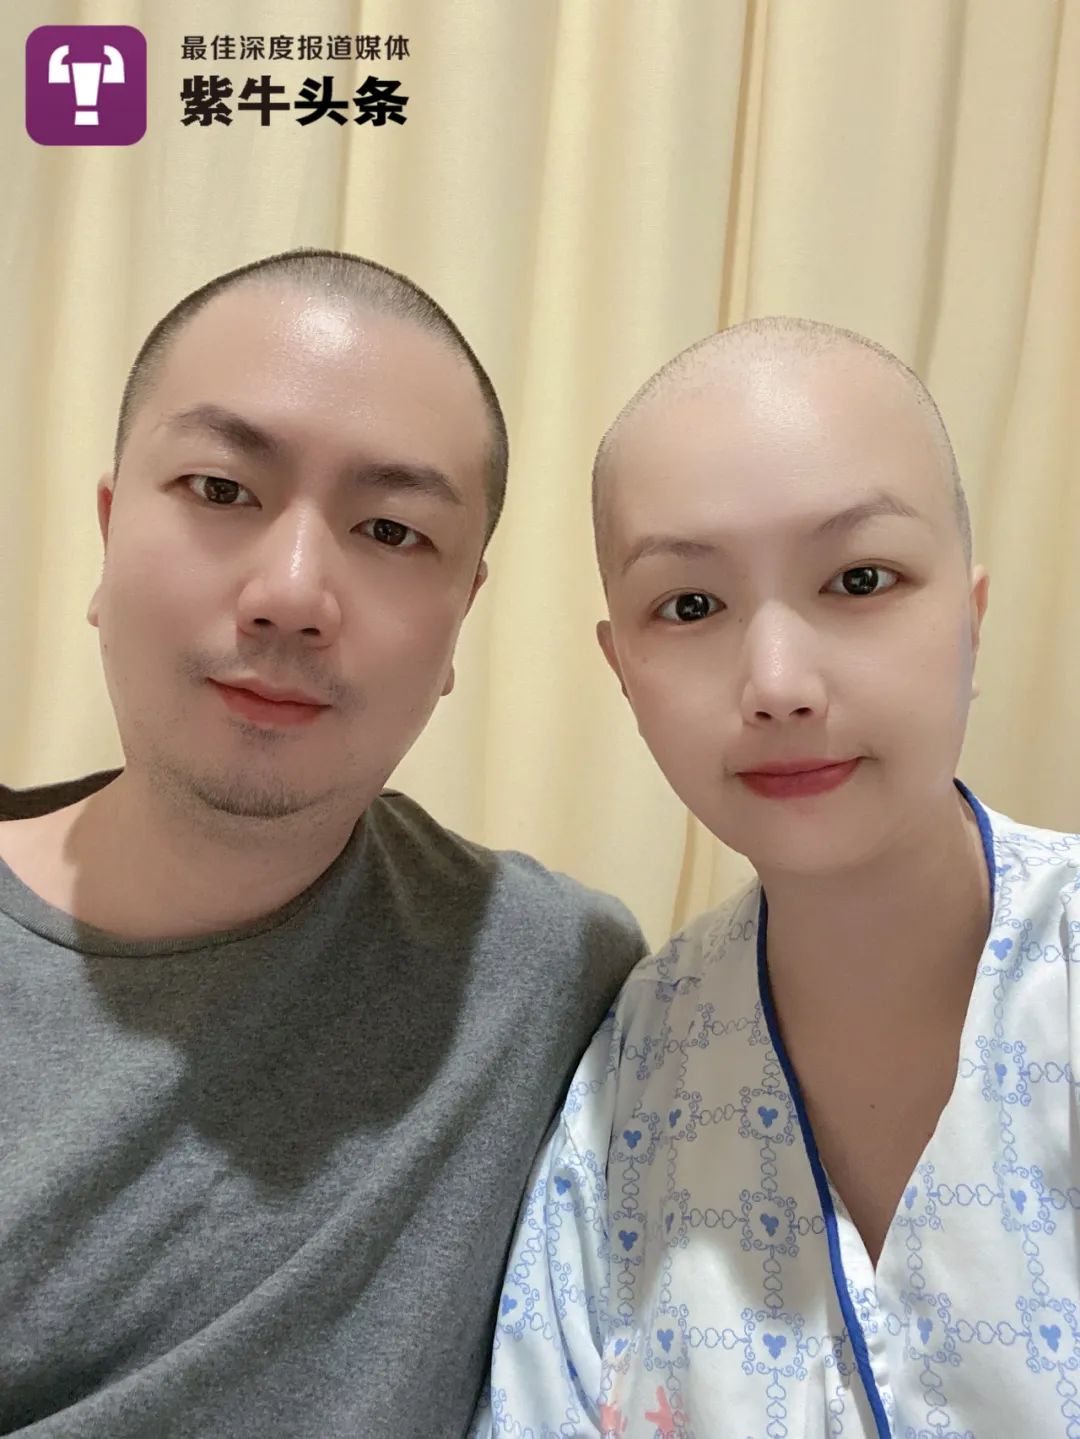 紫牛头条老公陪患癌妻子一起剃光头想让她知道她不是一个人在战斗